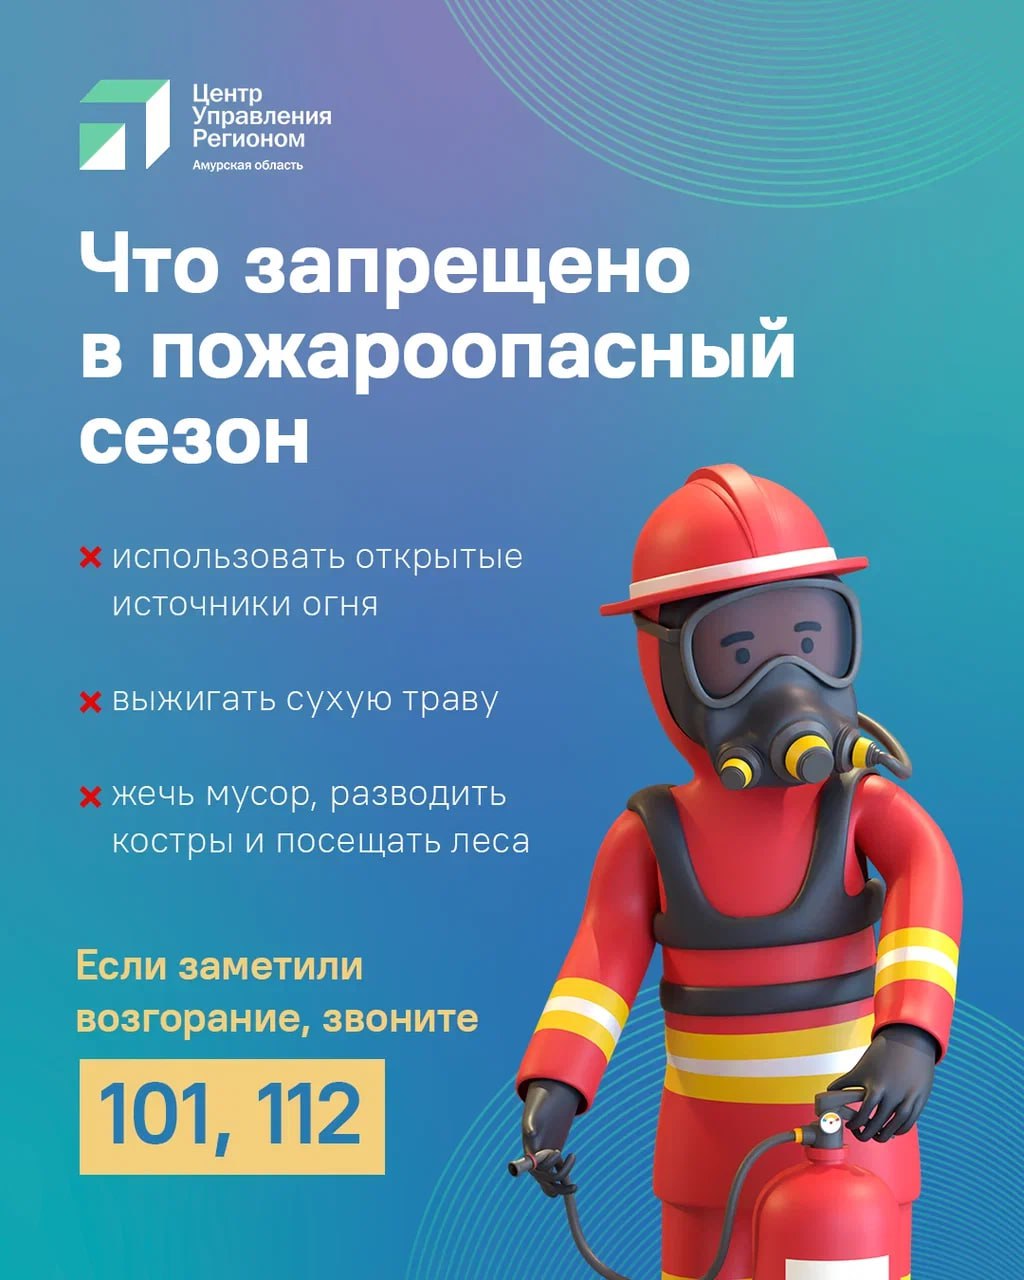 В амурской столице каждый день регистрируют природные пожары